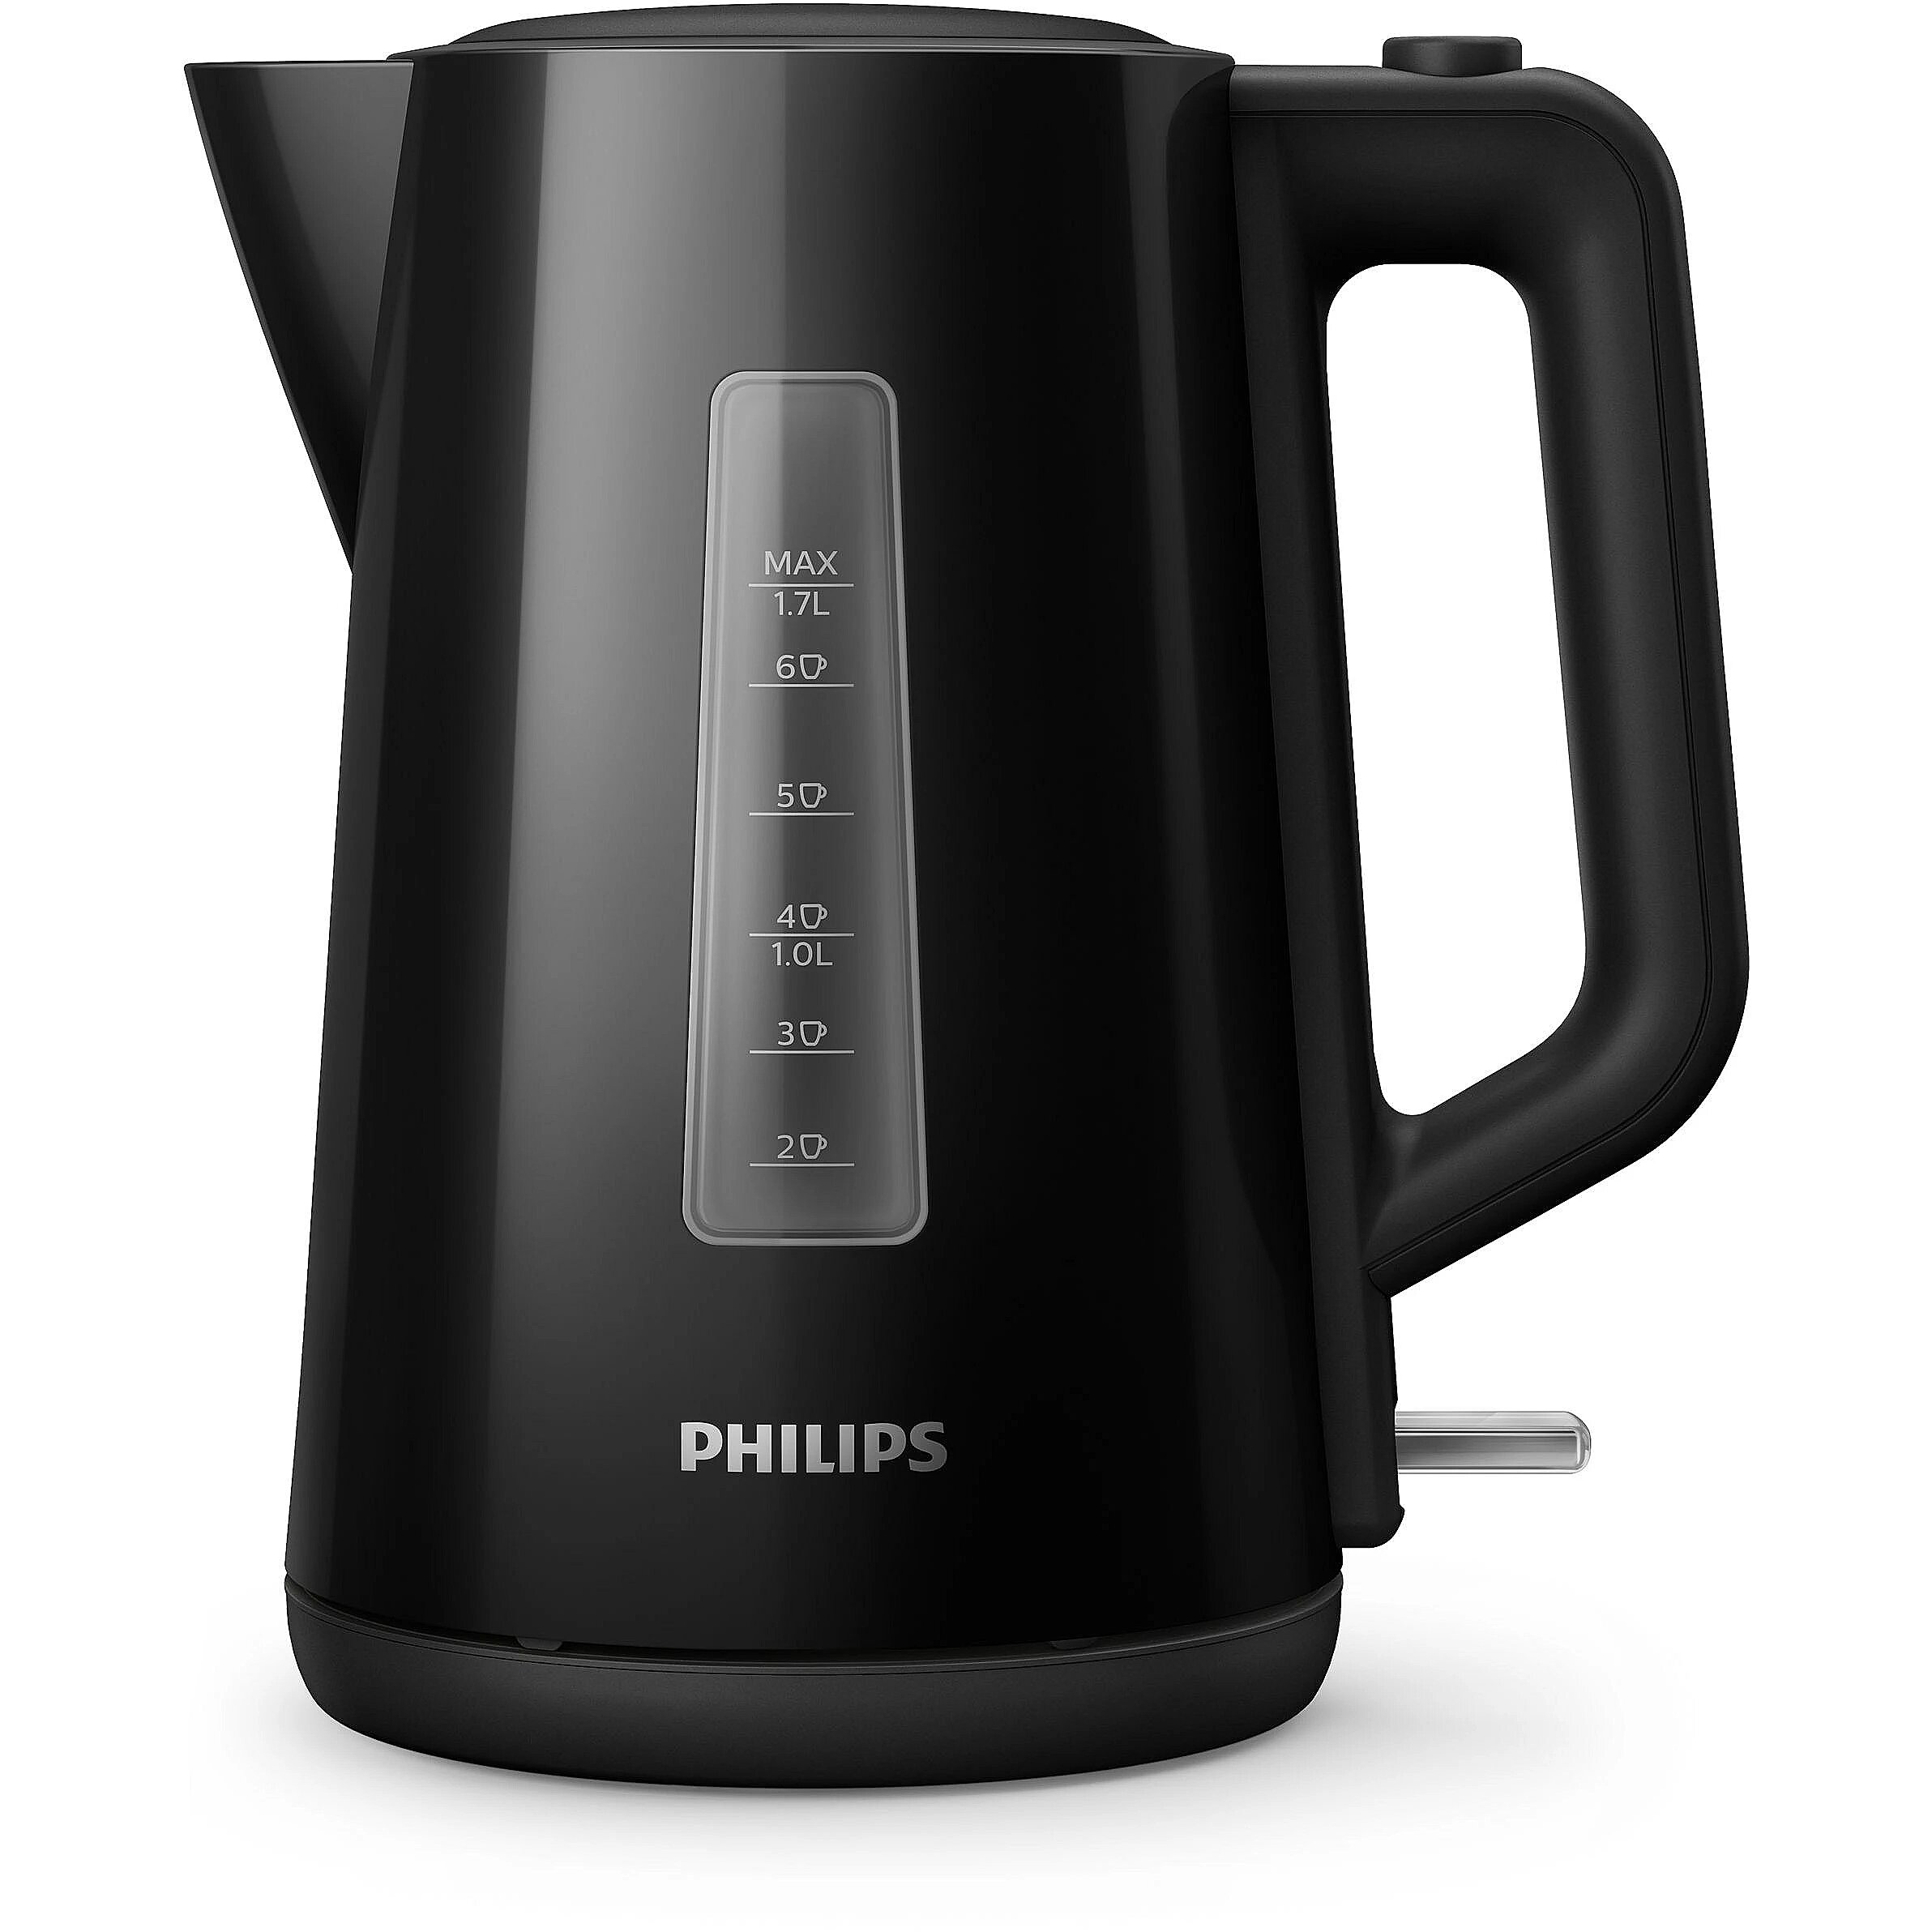 Филипс страна производитель. Чайник электрический Philips hd9318/00. Чайник Philips hd9318/20. Чайник электрический Philips hd9318. Philips hd9318/20, черный.